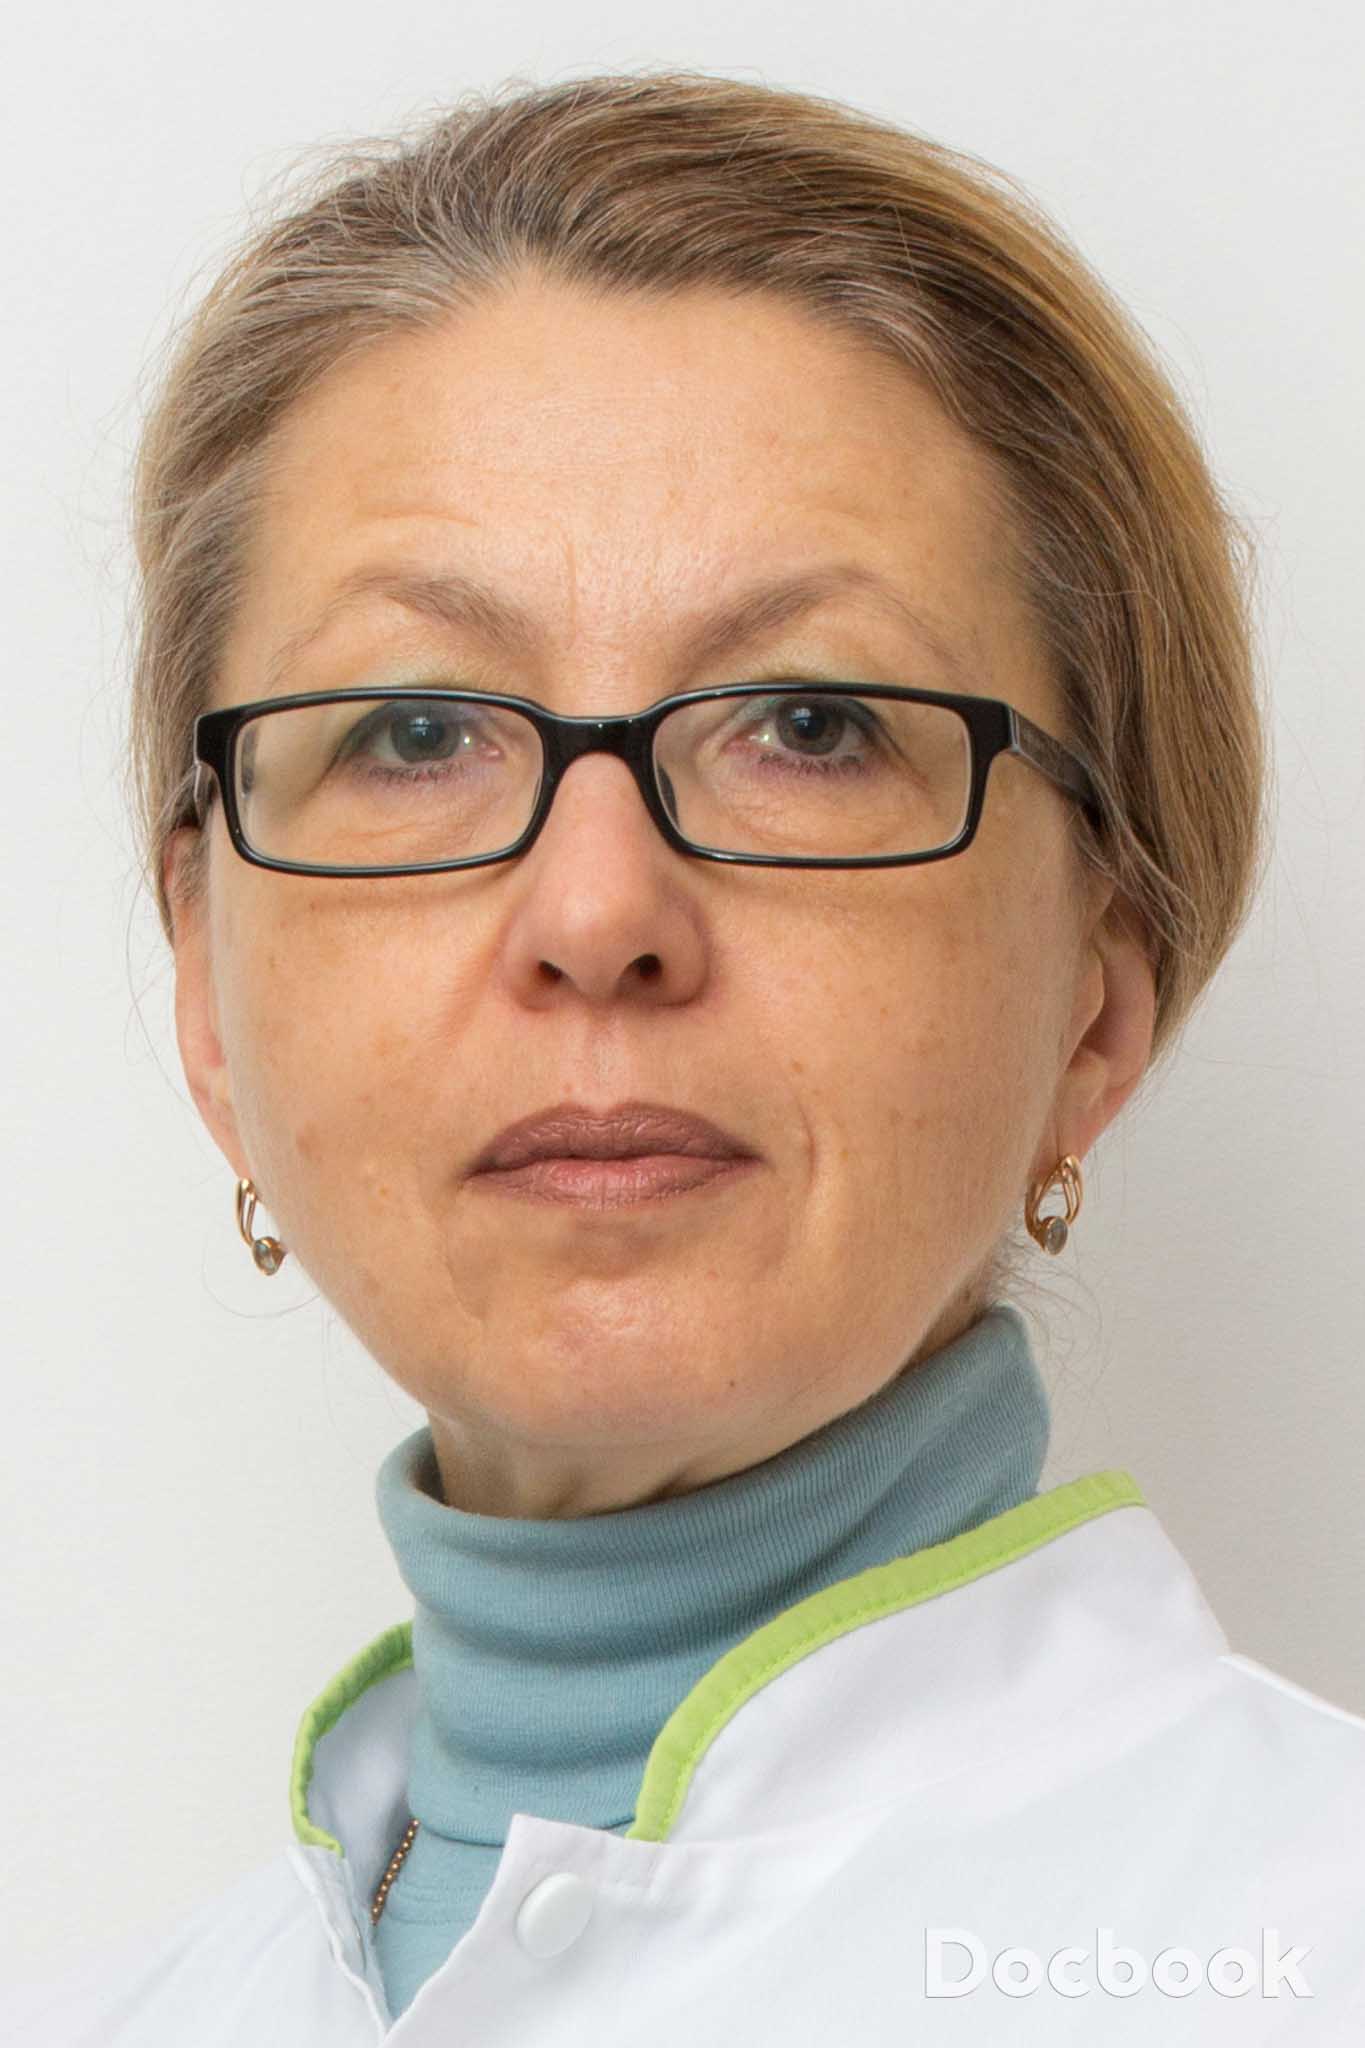 Dr. Alexandrescu Daniela NORD, Grupul Medical Provita